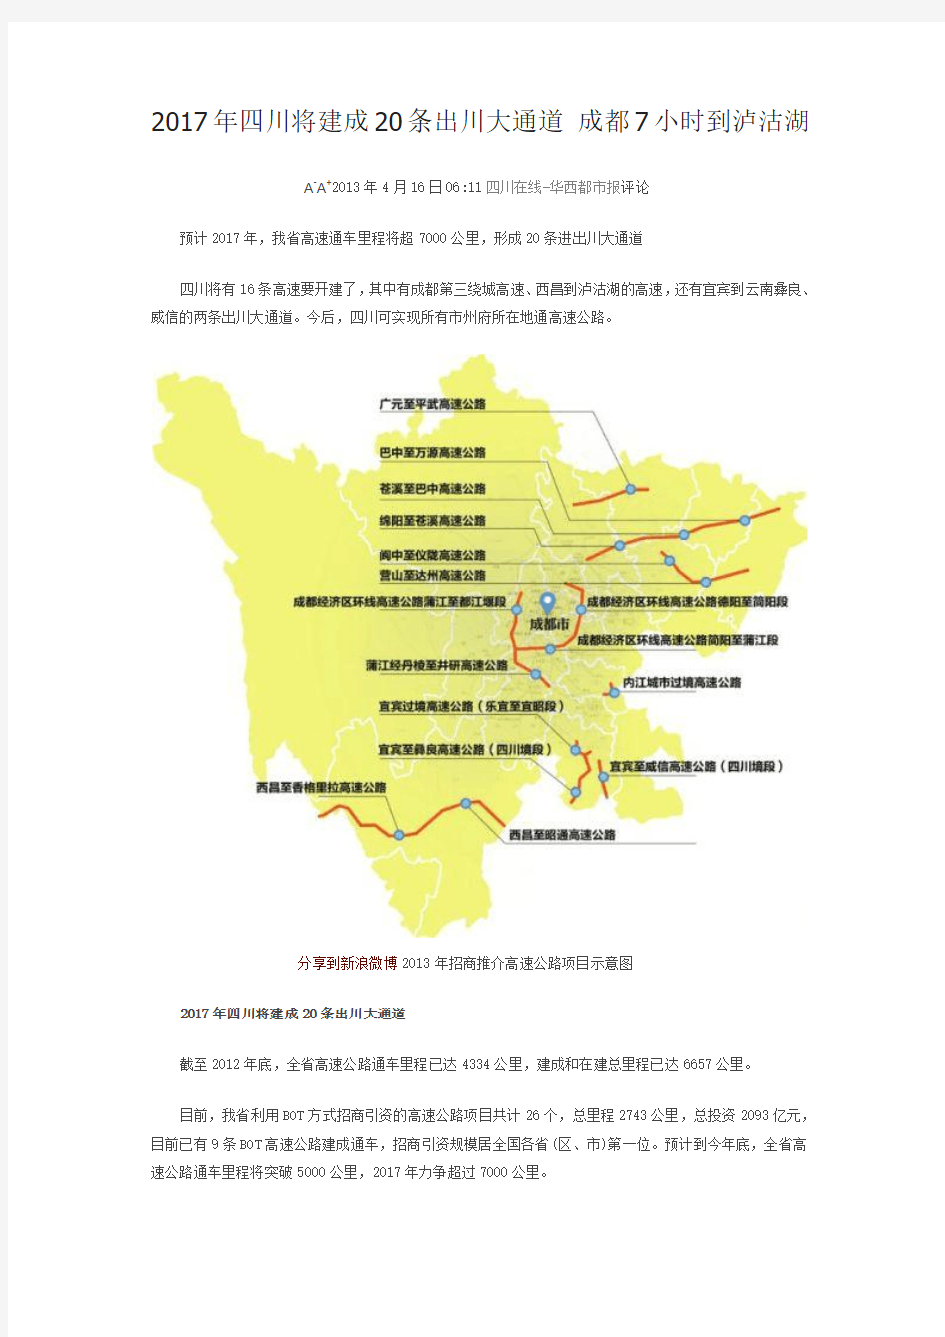 2017年四川将建成20条出川大通道 成都7小时到泸沽湖